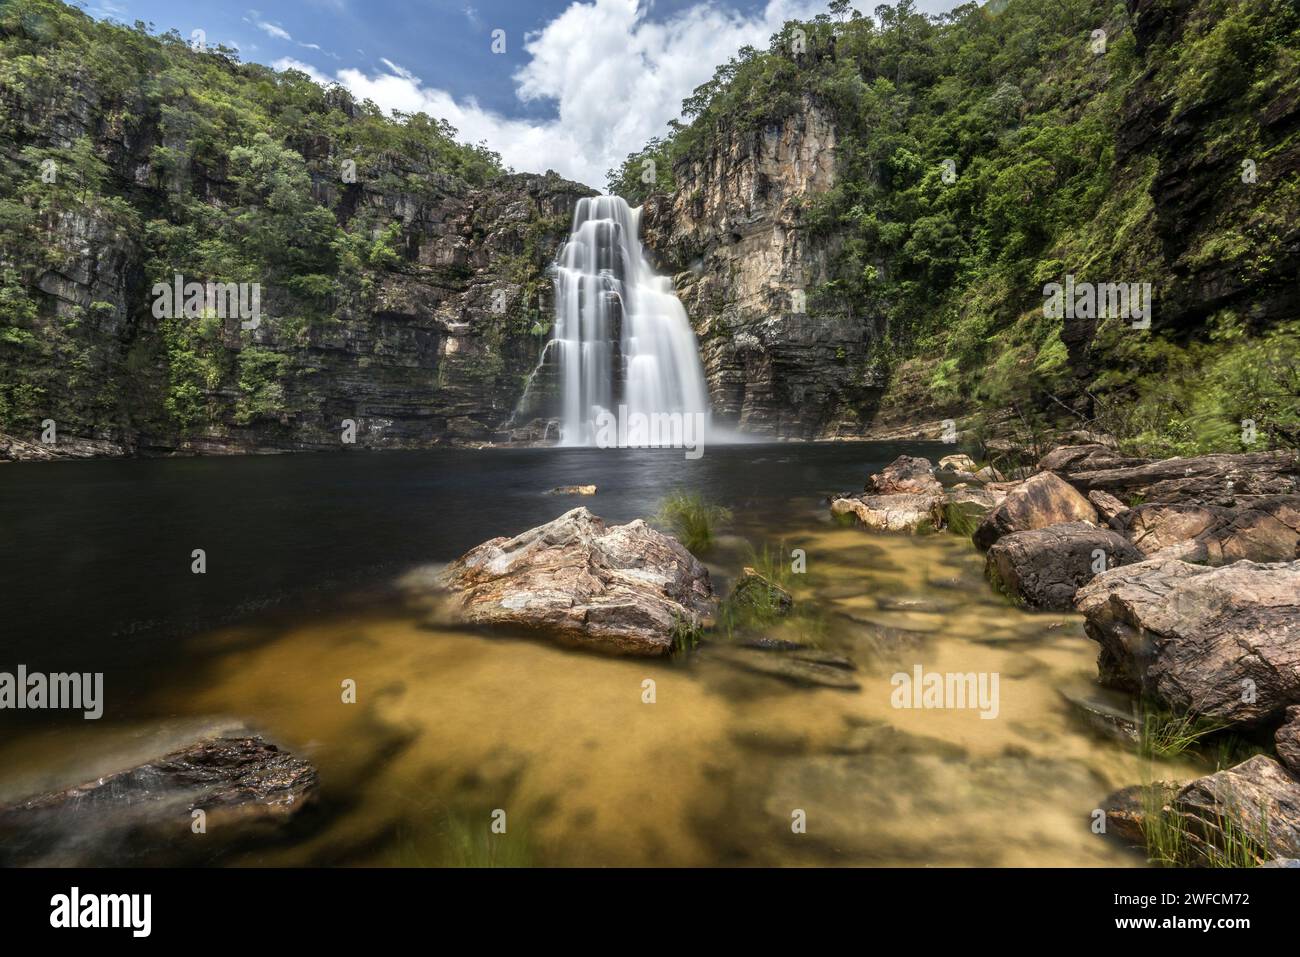 Cascata Garimpão conosciuta anche come salto di 80 metri - Parco Nazionale Chapada dos Veadeiros - Foto Stock